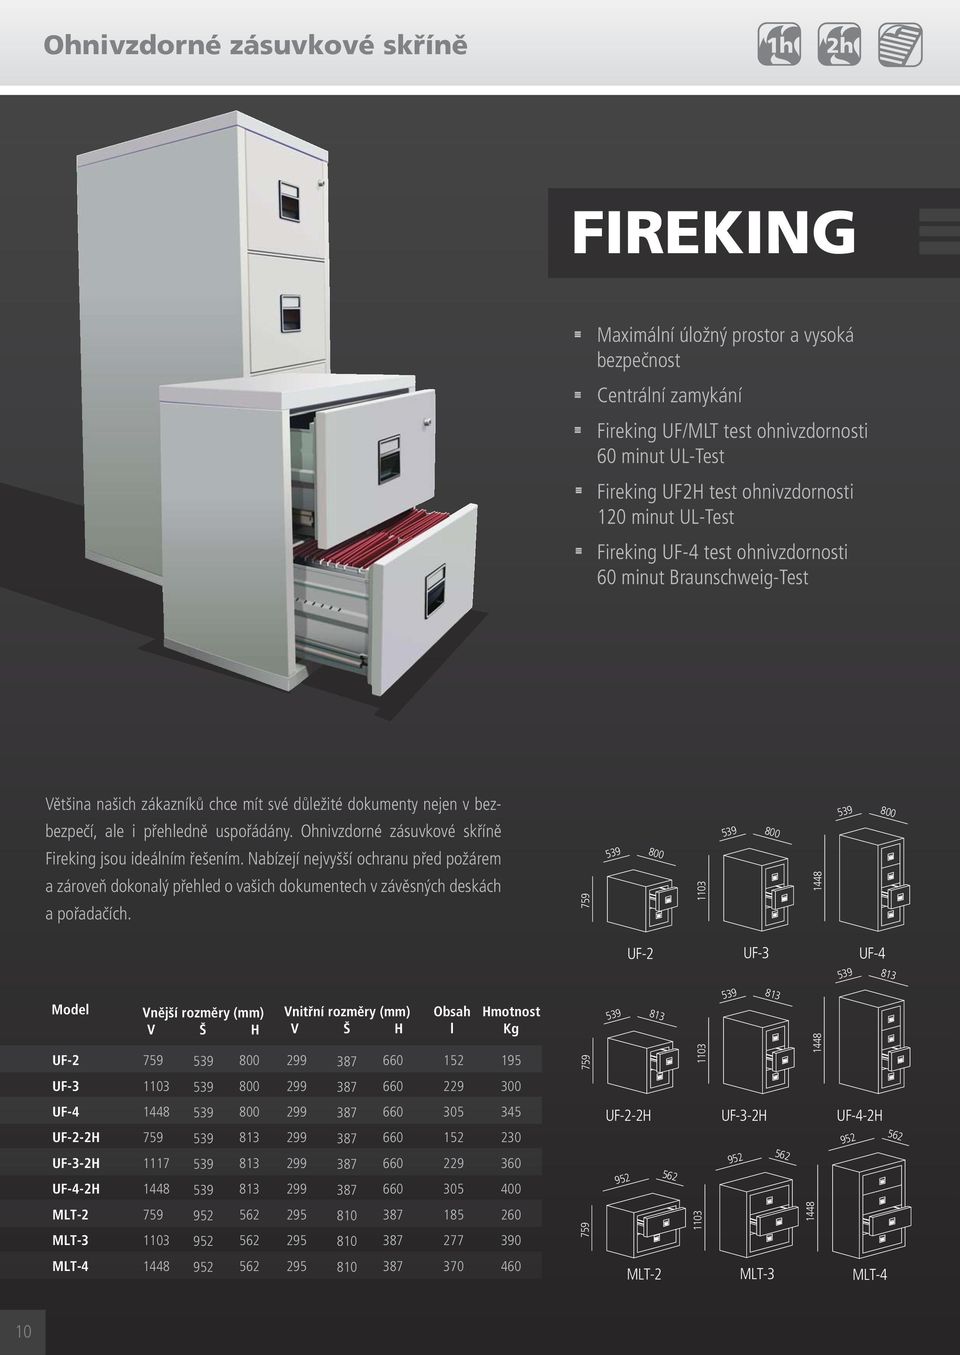 Ohnivzdorné zásuvkové skříně Fireking jsou ideáním řešením. Nabízejí nejvyšší ochranu před požárem a zároveň dokonaý přehed o vašich dokumentech v závěsných deskách a pořadačích.